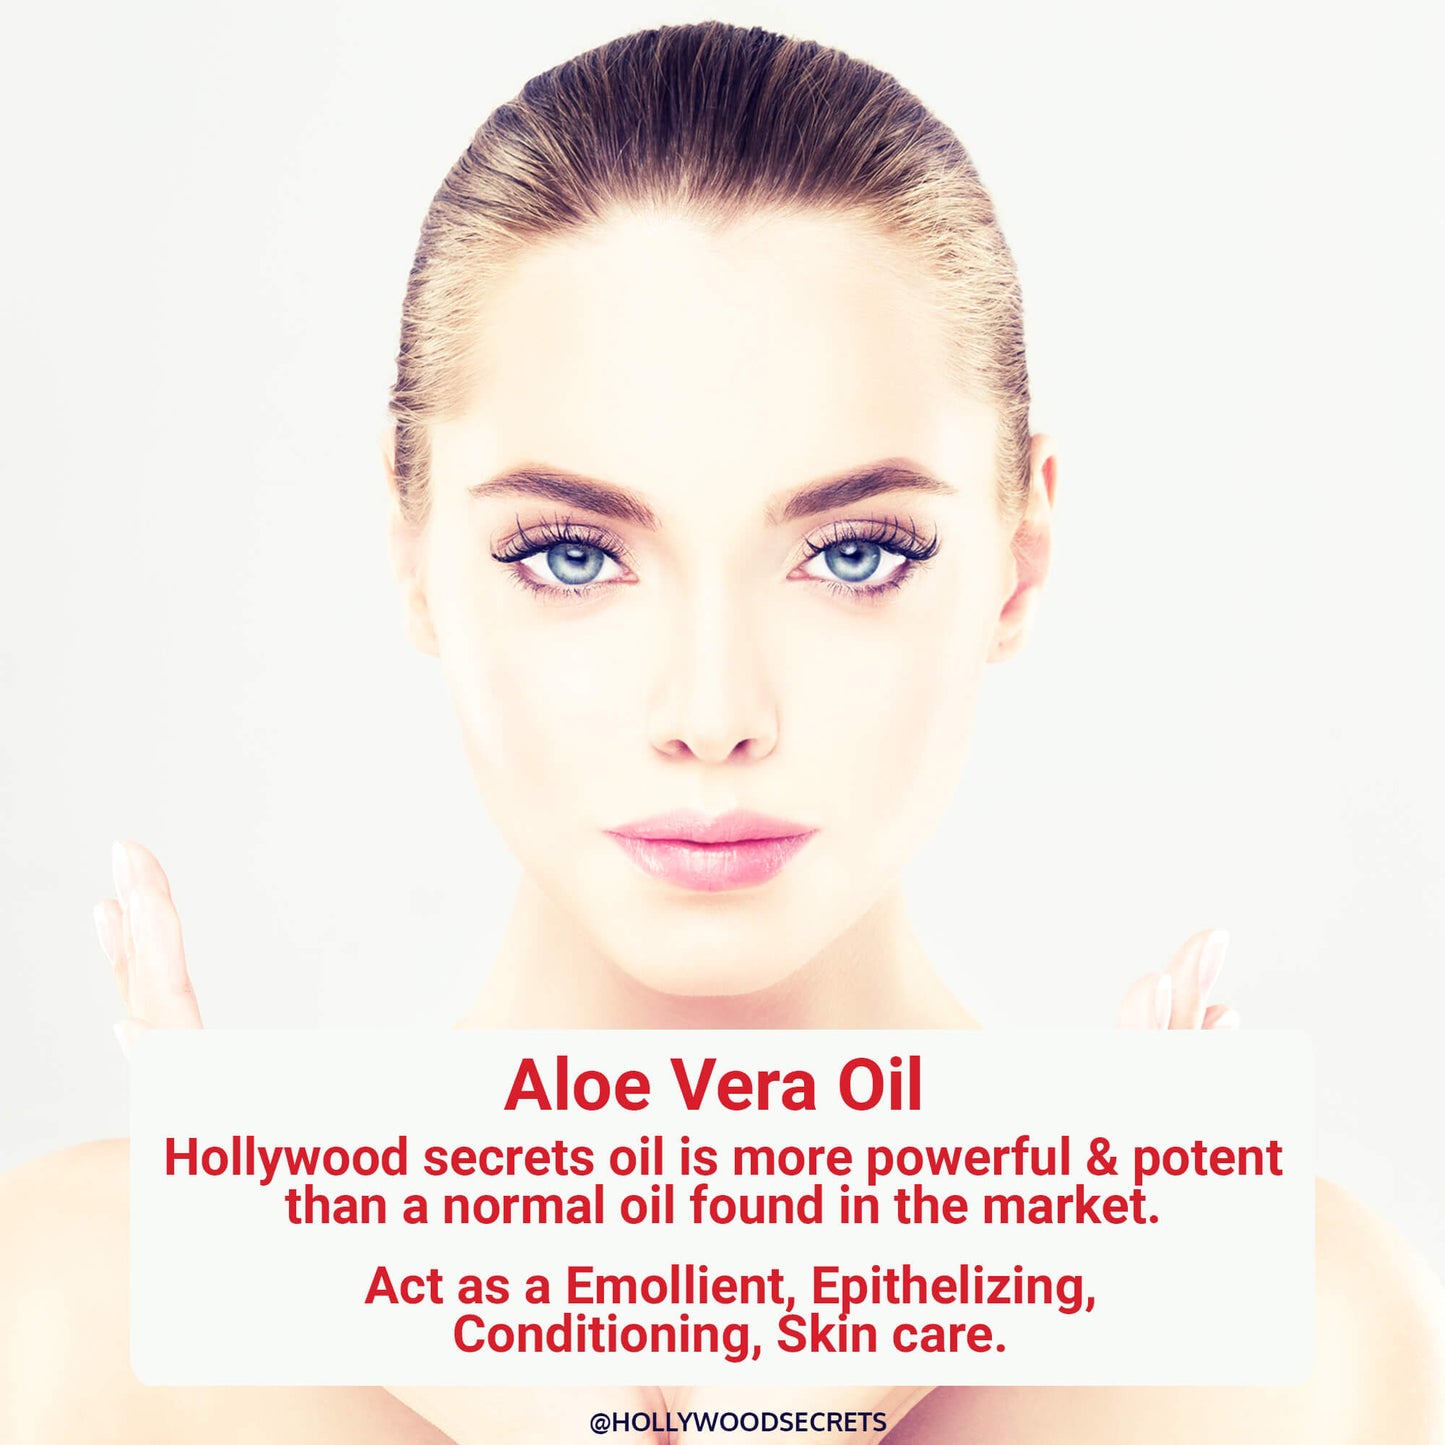 Aloe Vera Oil Pure Cold Pressed 100ml Hollywood Secrets